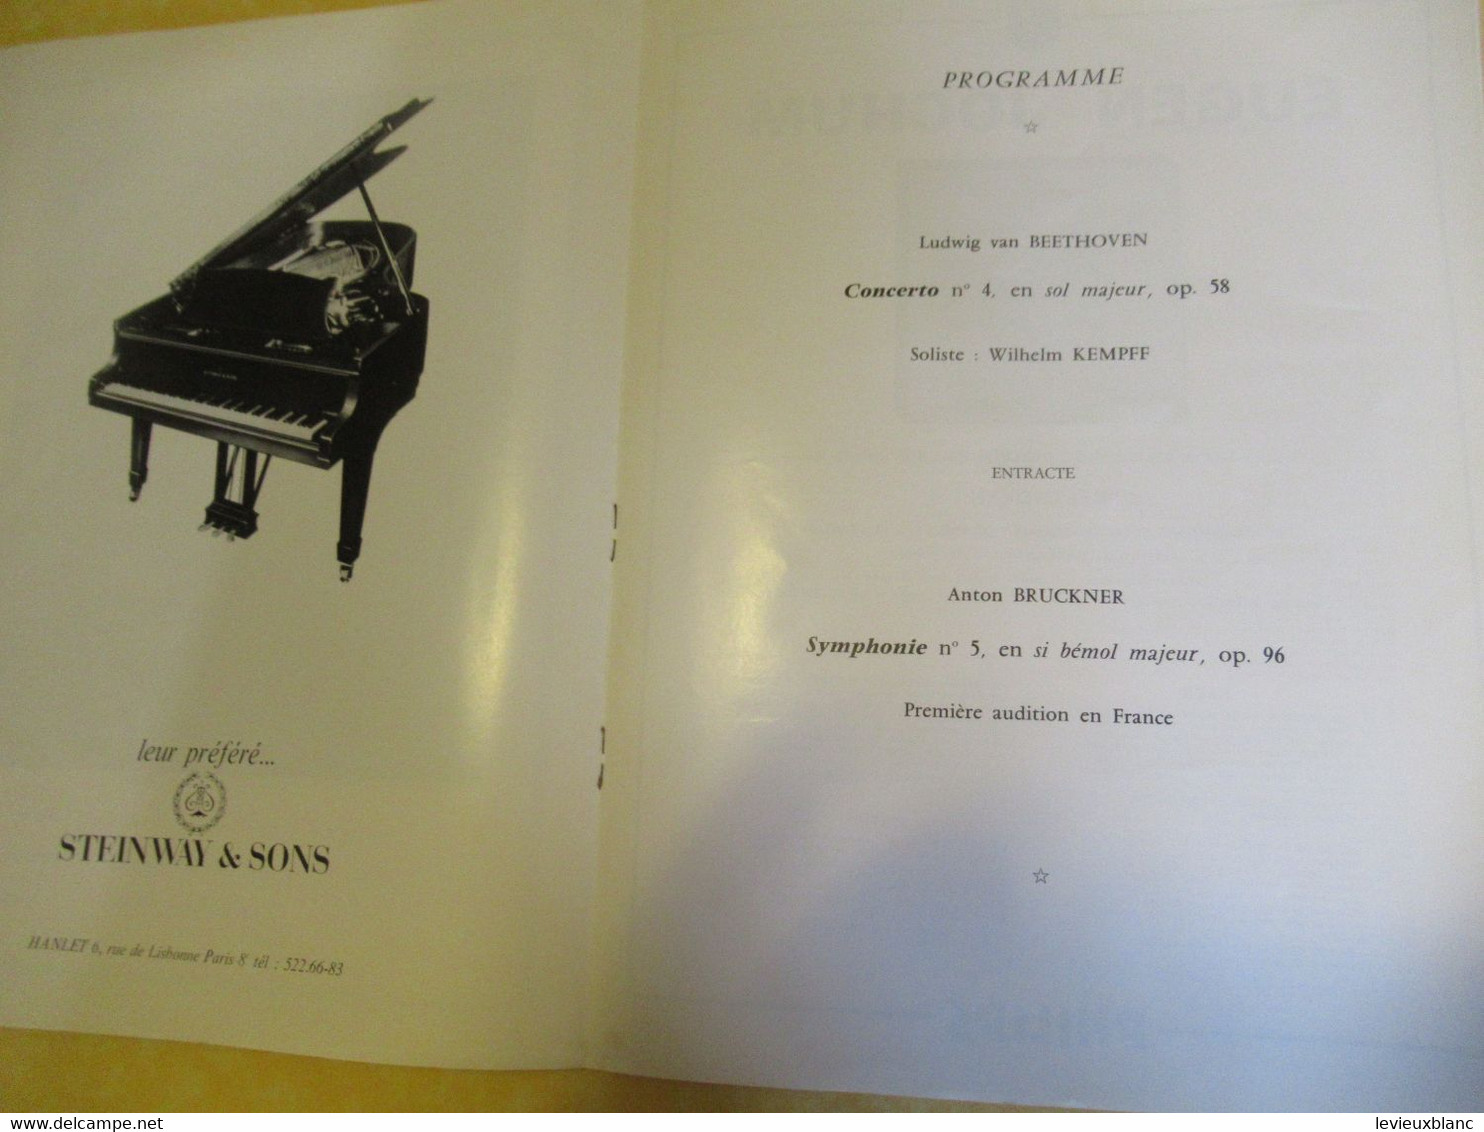 Programme ancien/Musique/Festival Symphonique de Paris/Orchestre national/O.R.T.F./Kempff/Jochum/1969 PROG354